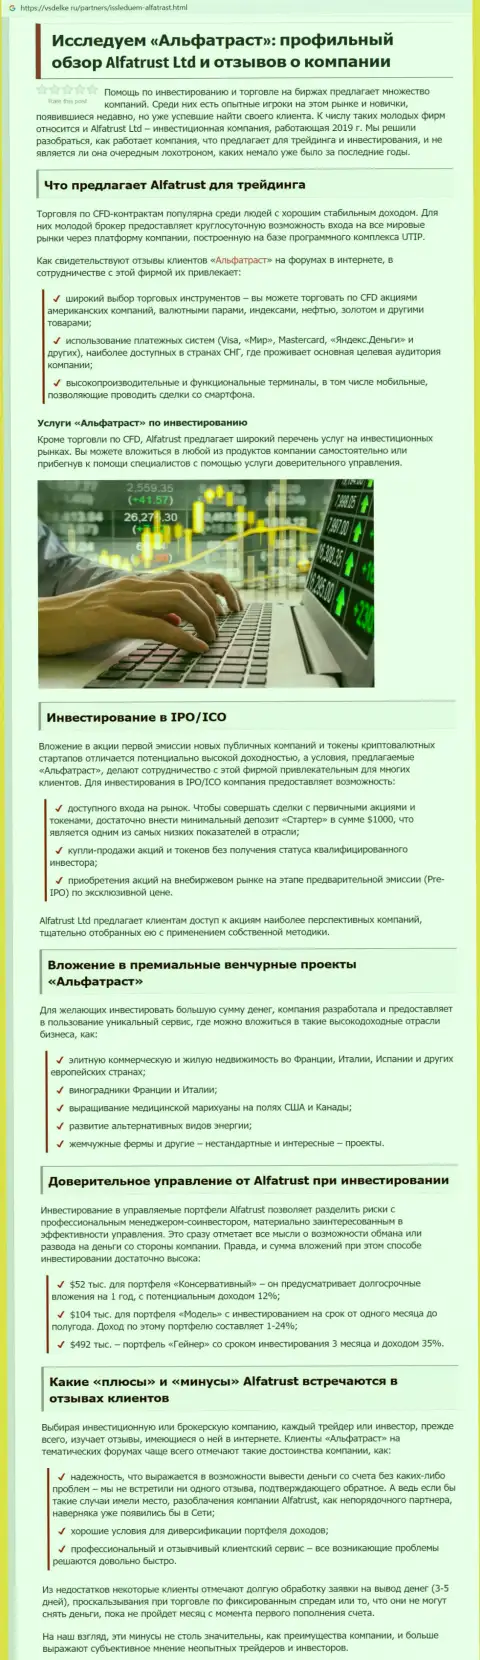 Информационный материал о ФОРЕКС организации Alfa Trust на интернет-портале vsdelke ru